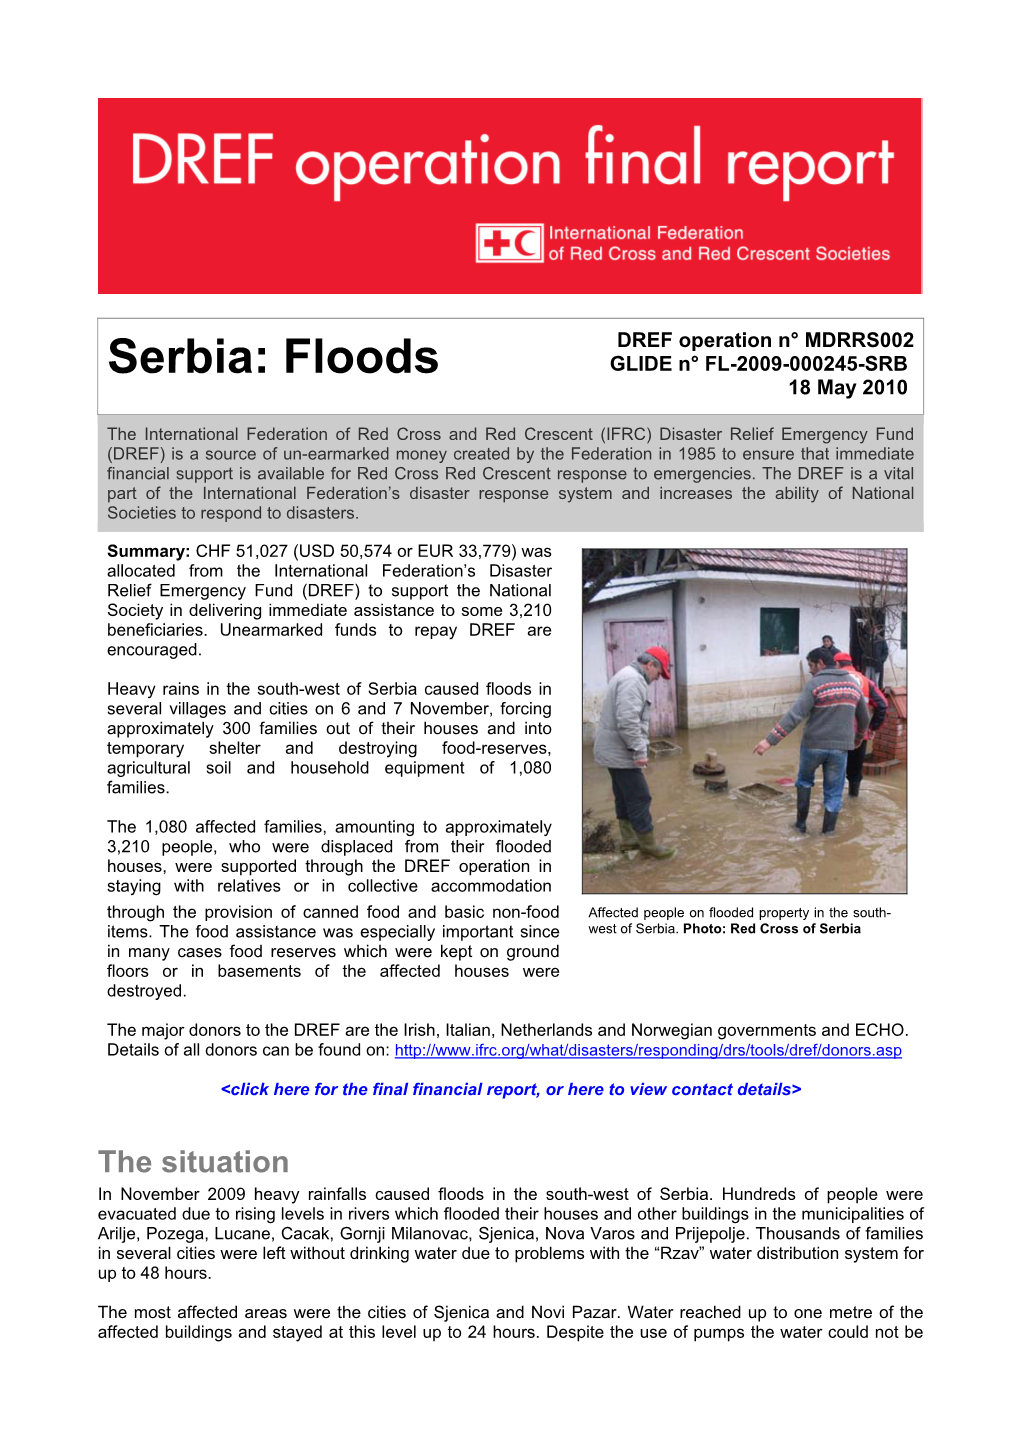 Serbia: Floods GLIDE N° FL-2009-000245-SRB 18 May 2010